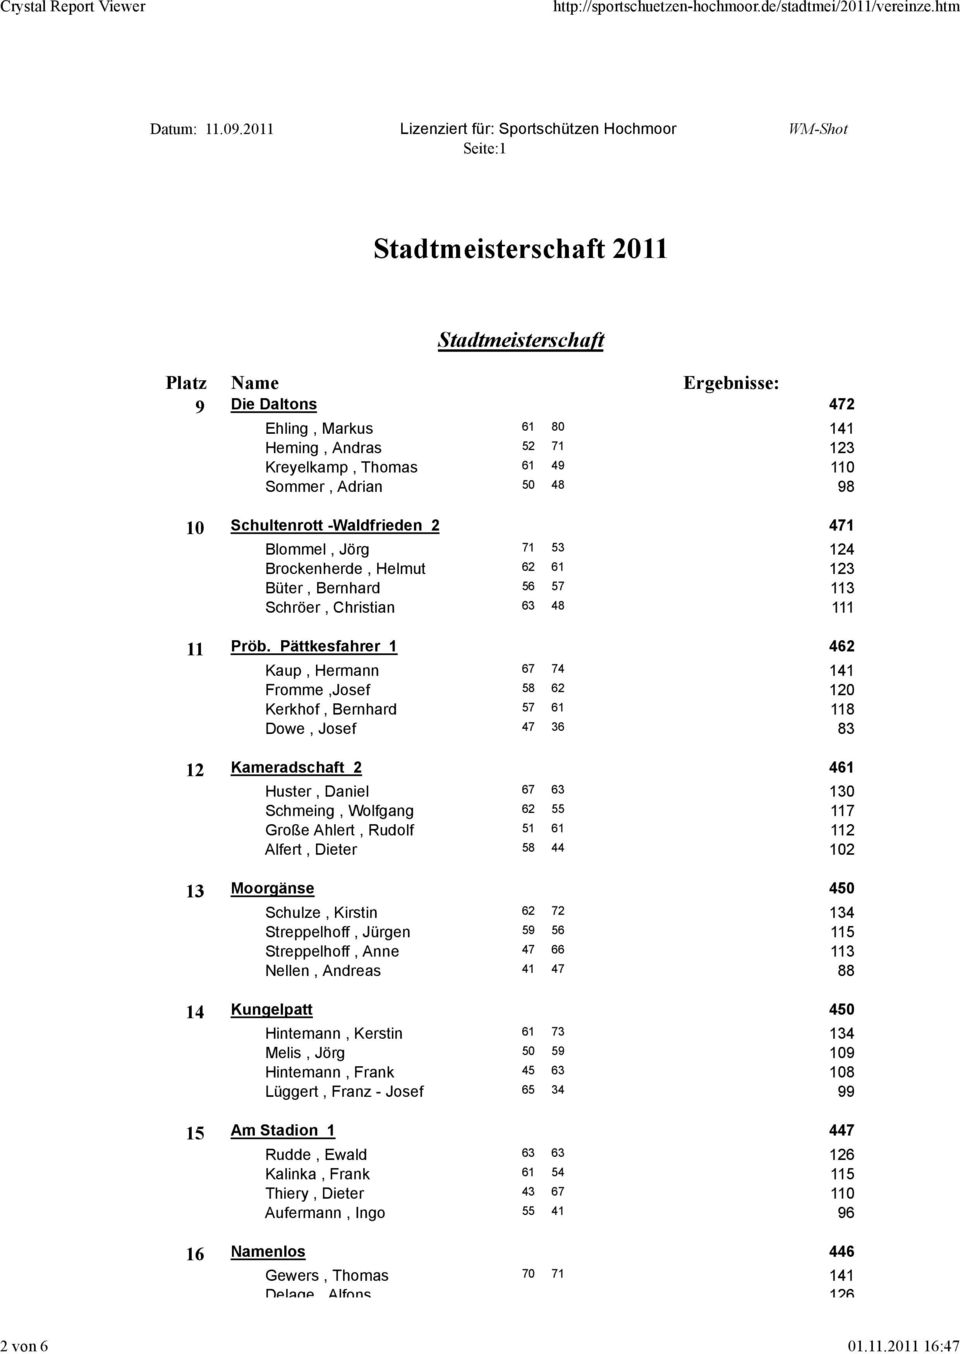 124 Brockenherde, Helmut 62 61 123 Büter, Bernhard 56 57 113 Schröer, Christian 63 48 111 11 Pröb.